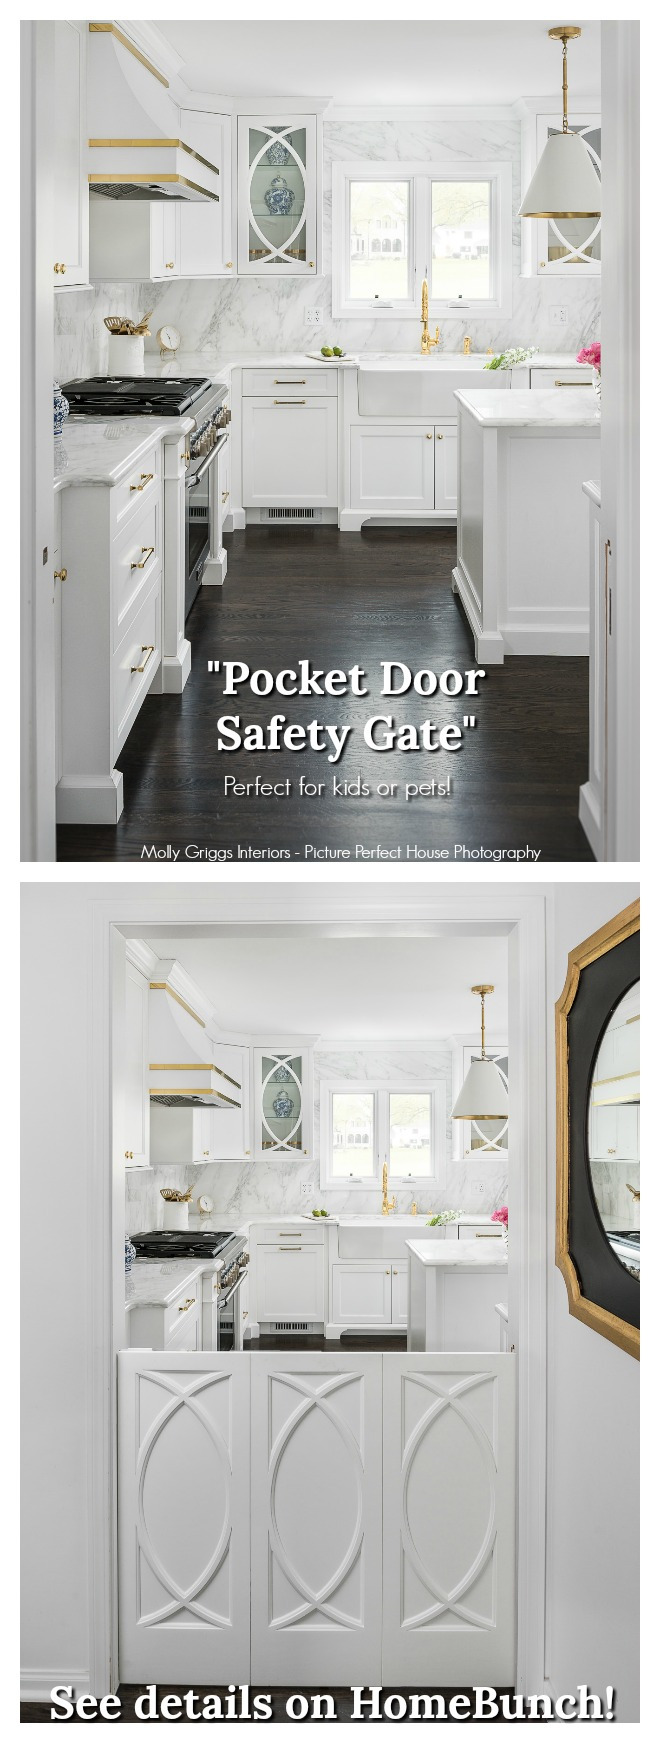 Pocket Door Gate Pocket Door Gate This custom safety gate works the same as a "pocket door" would #safetygate #pocketdoorgate #slidinggate #indoorgate #kidsgate